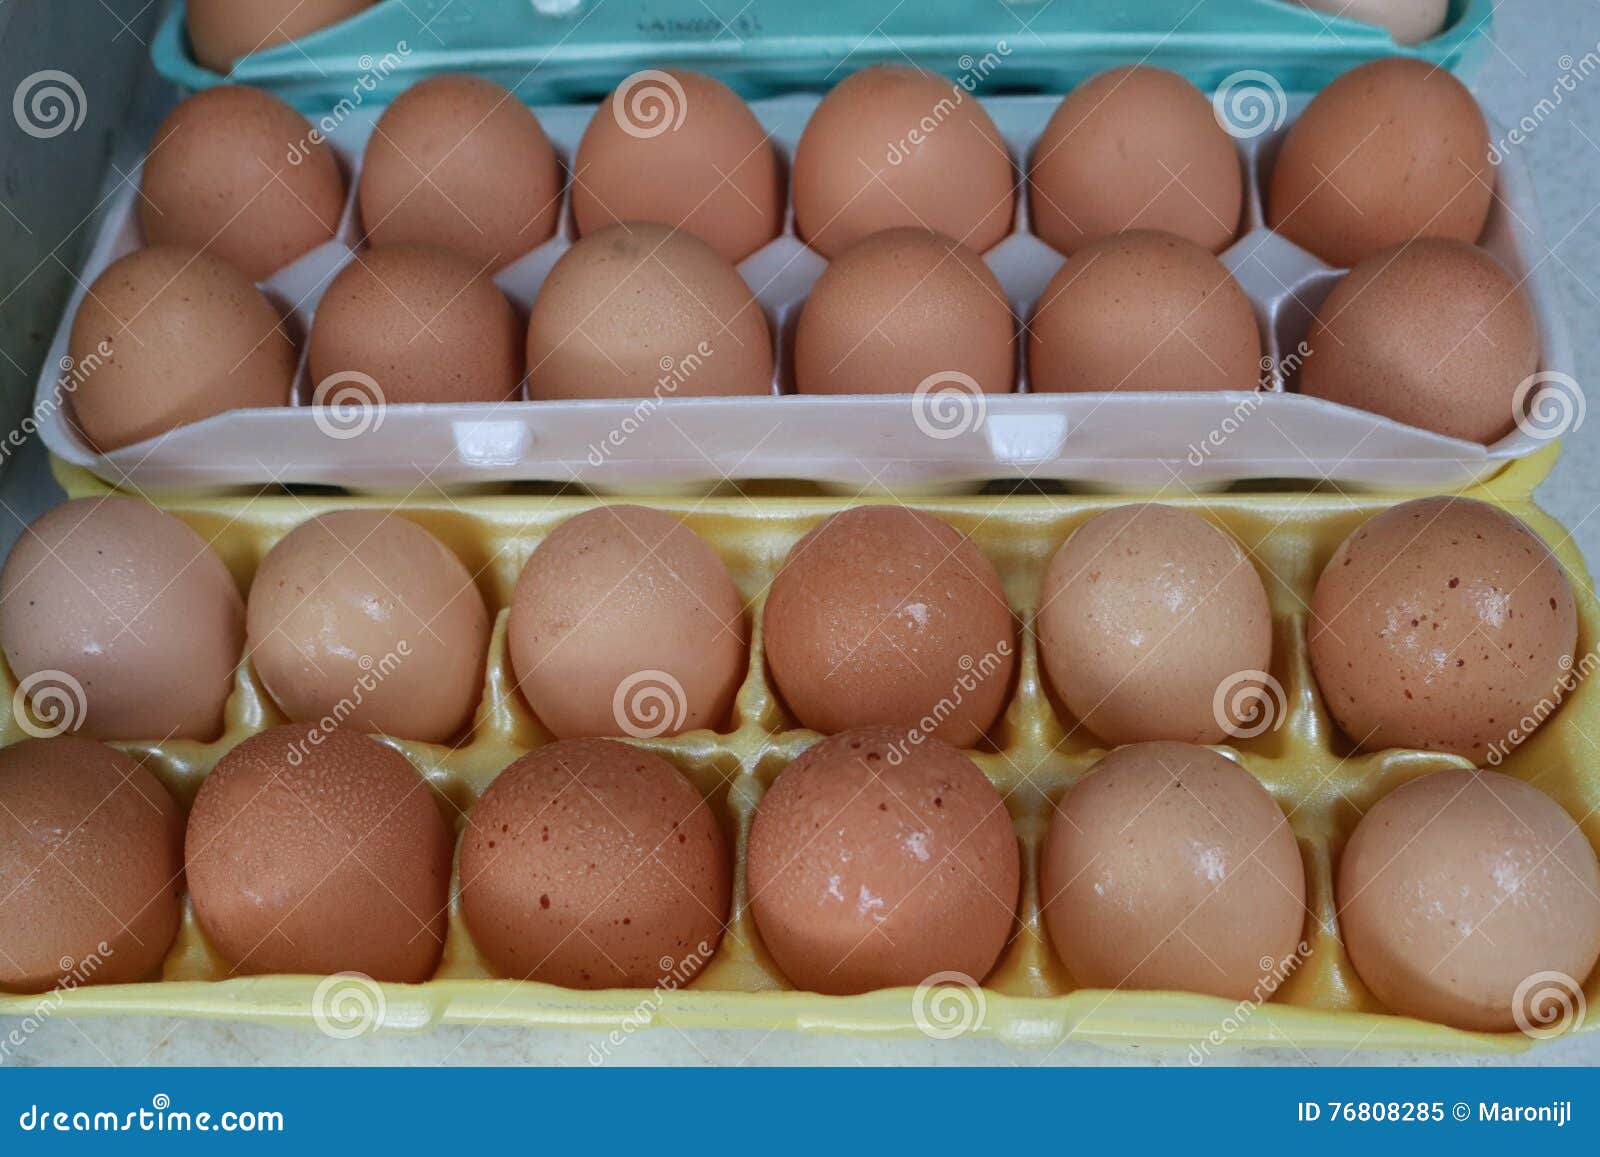 Сколько яиц у мужчин. Стоимость человеческого яйца.